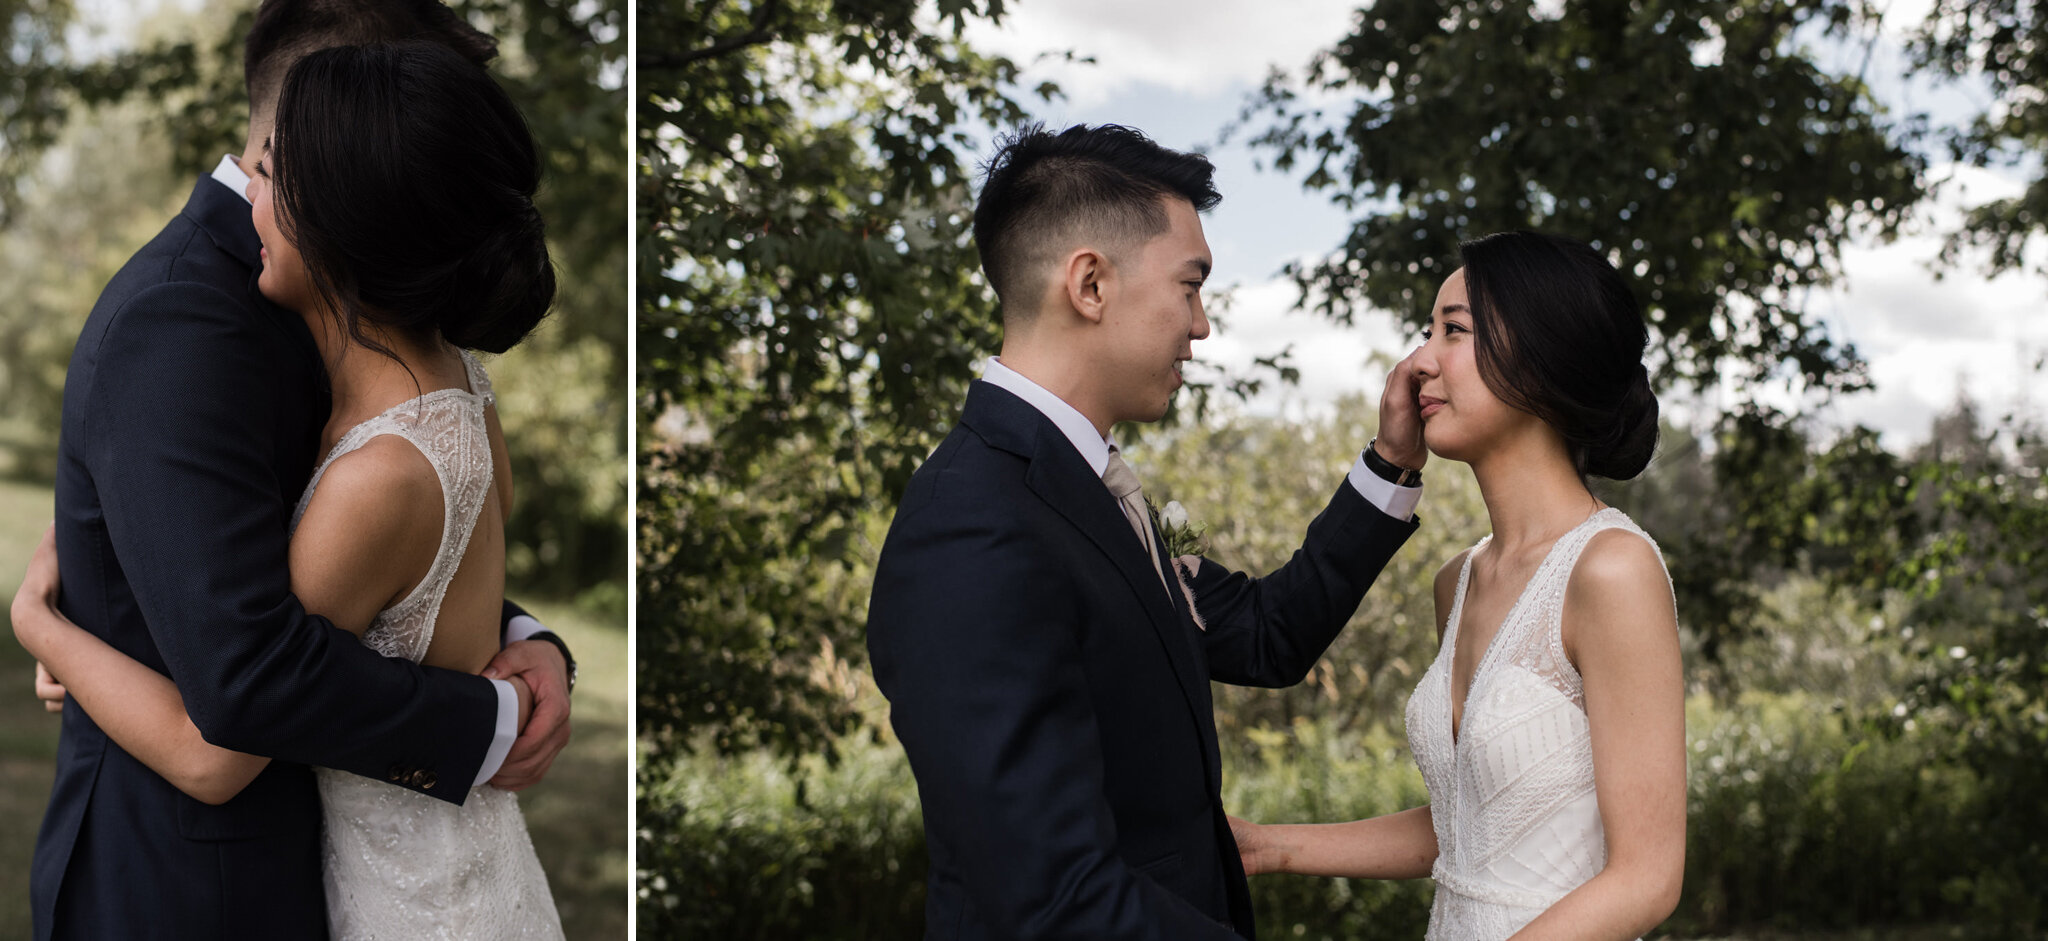 171-emotional-first-look-steamwhistle-brewery-wedding-toronto-bride-groom.jpg